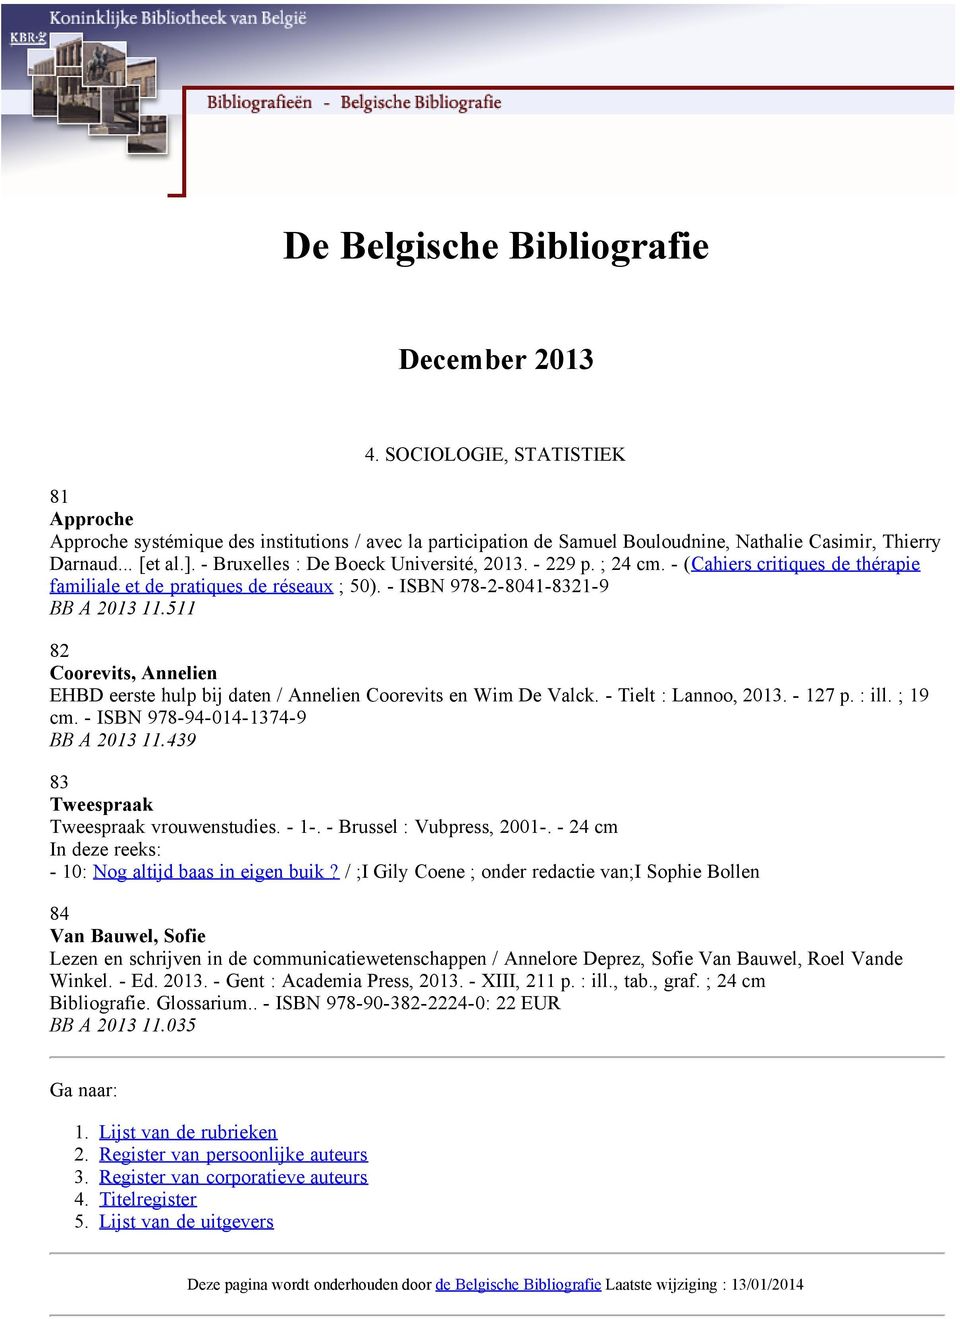 511 82 Coorevits, Annelien EHBD eerste hulp bij daten / Annelien Coorevits en Wim De Valck. - Tielt : Lannoo, 2013. - 127 p. : ill. ; 19 cm. - ISBN 978-94-014-1374-9 BB A 2013 11.